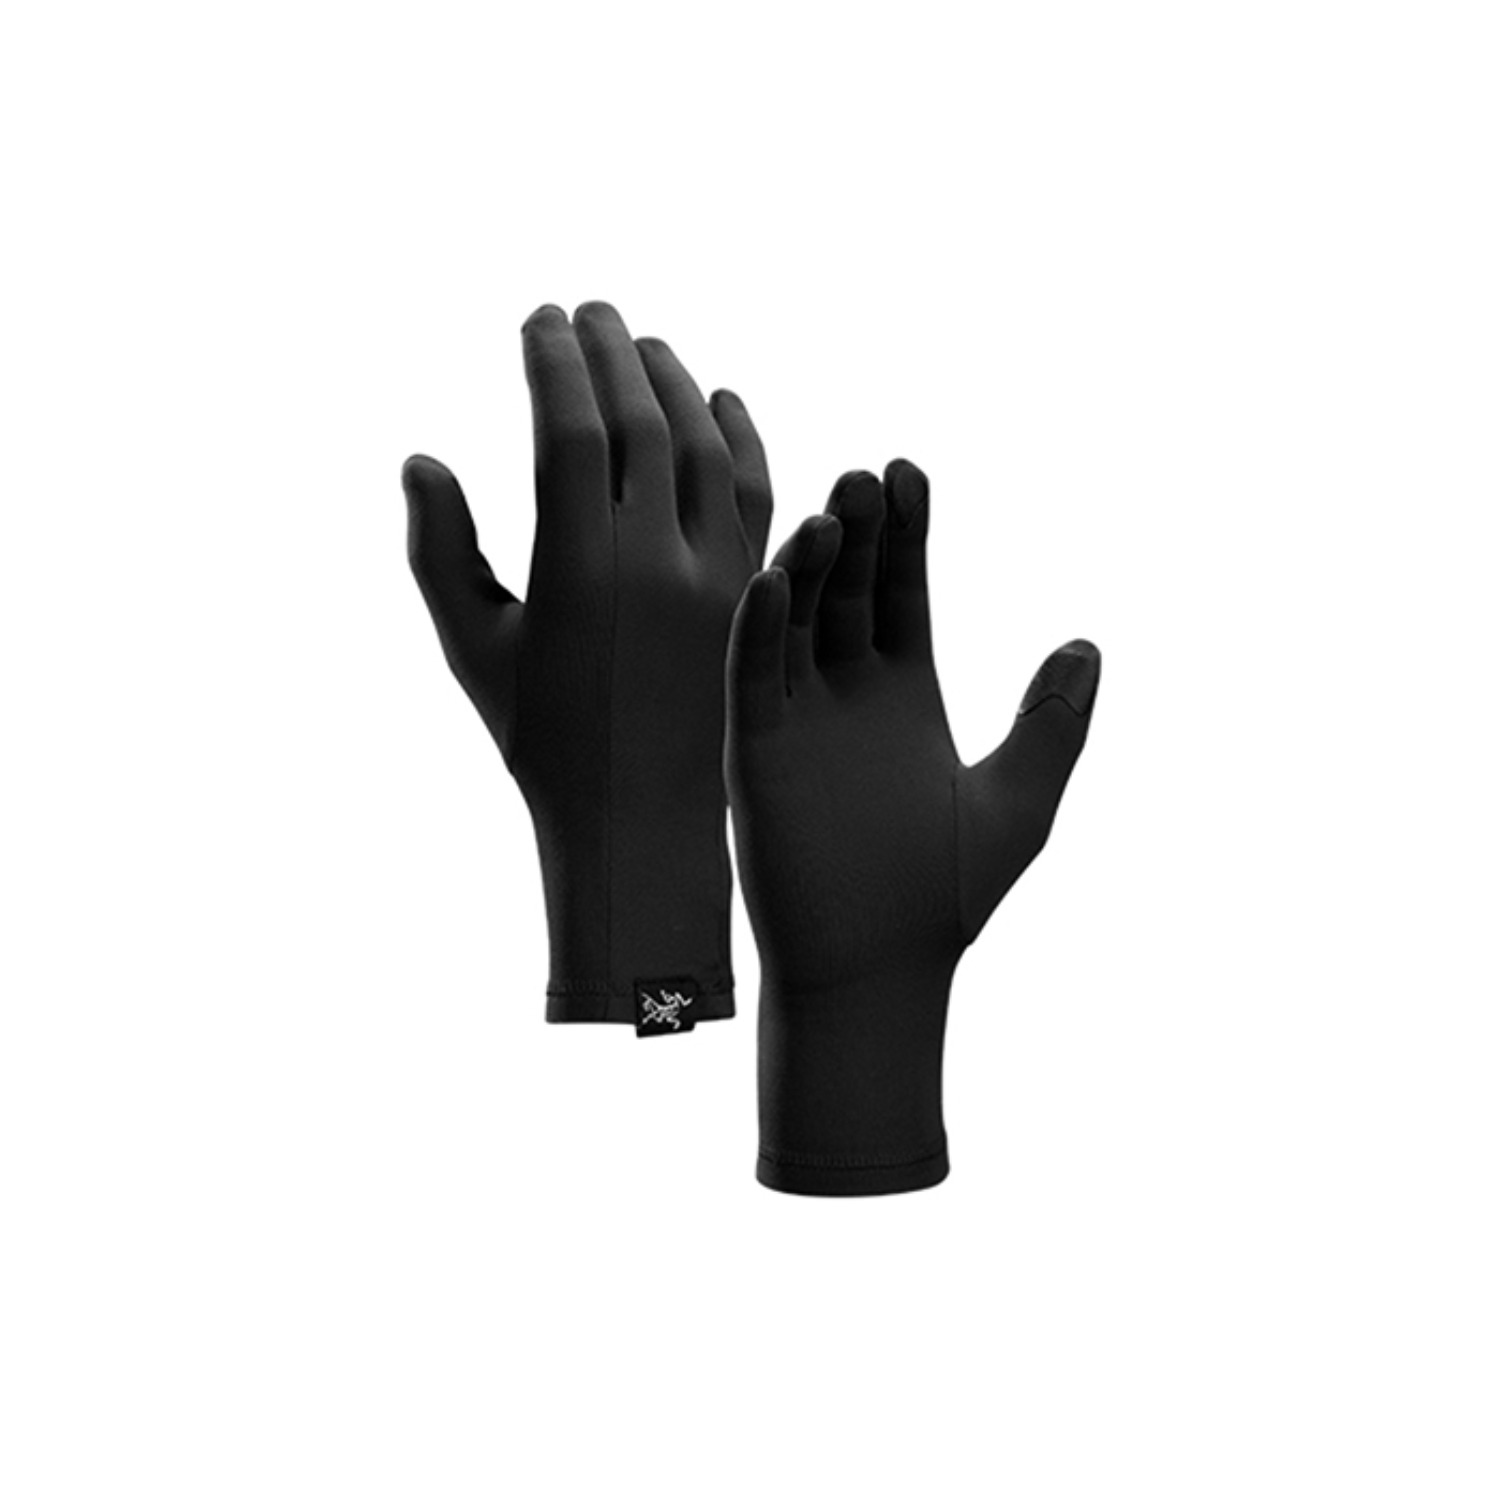 rho glove black